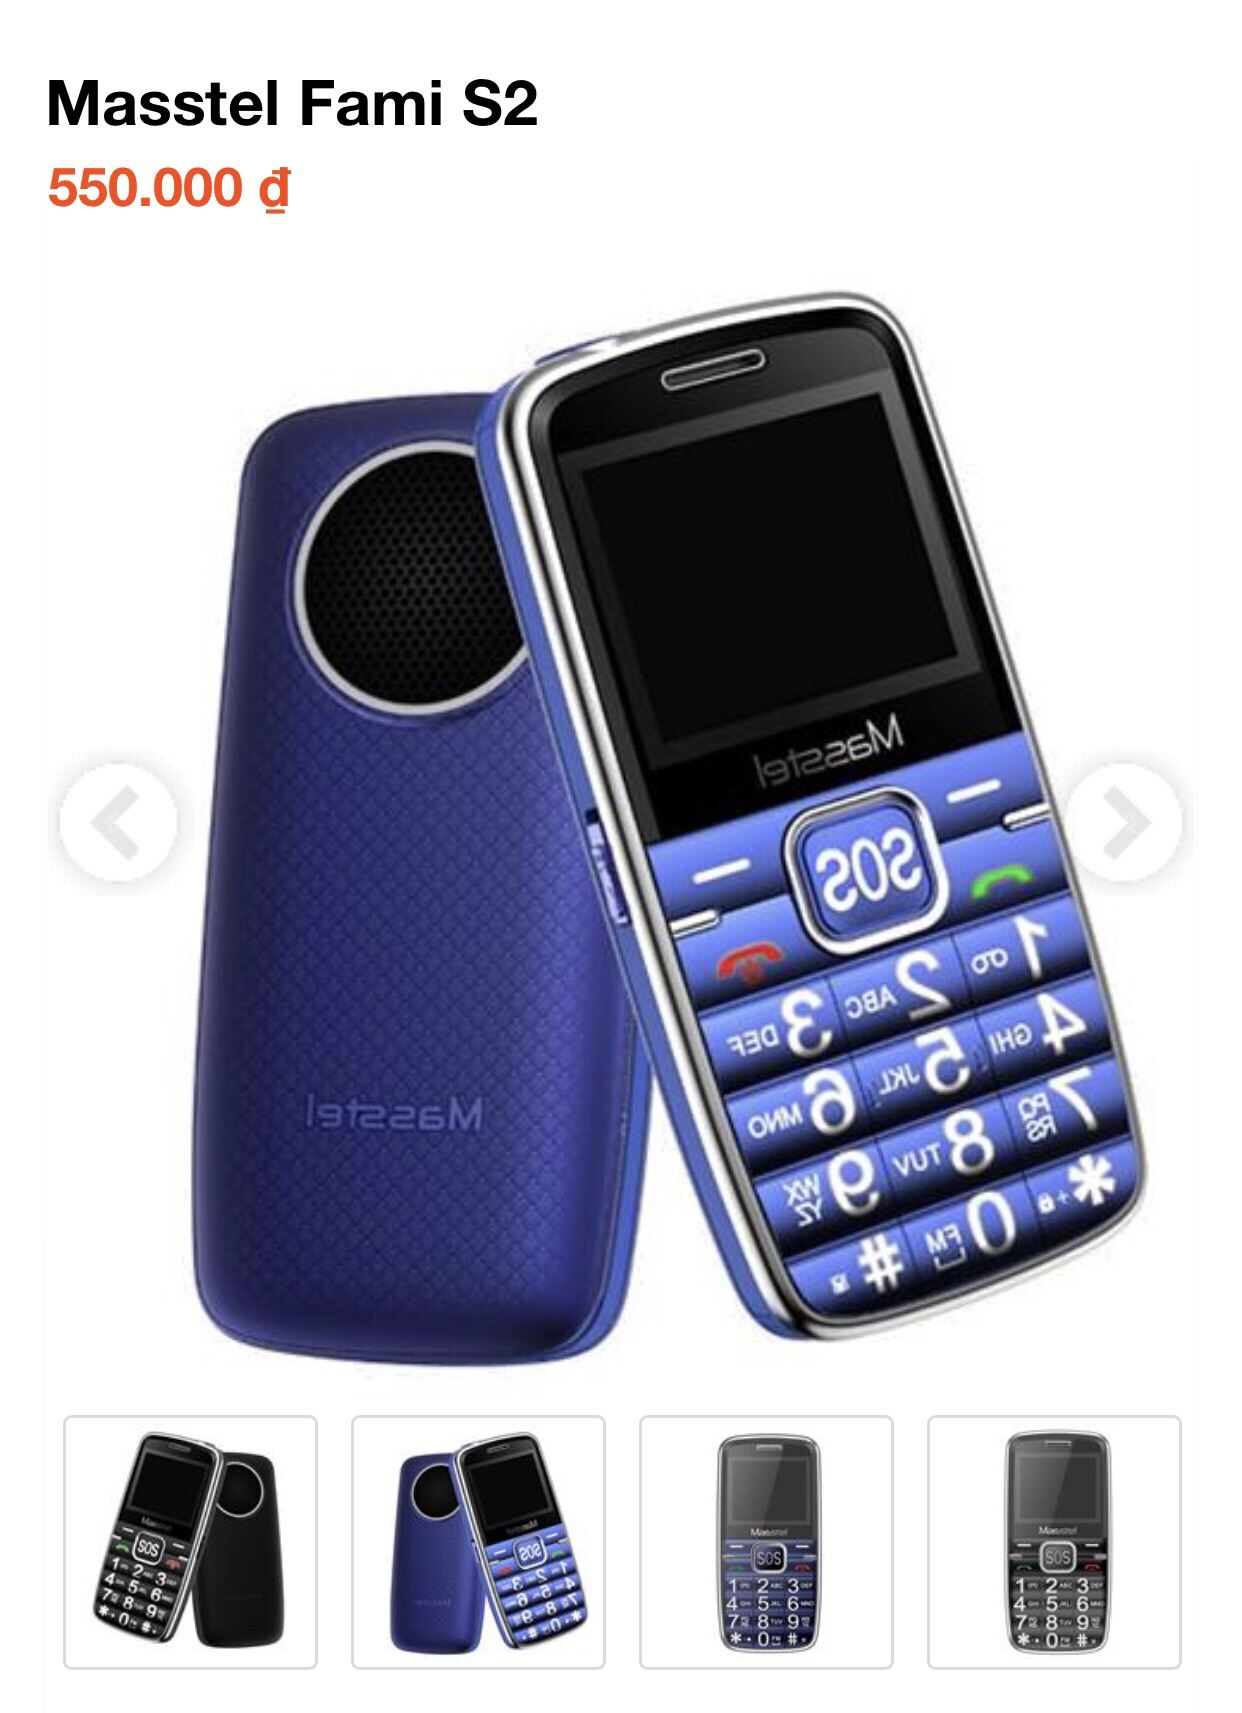 Điện thoại người già Masstel Fami S2. (Hàng chính hãng) chuông to chữ to .Bảo hành 12 tháng